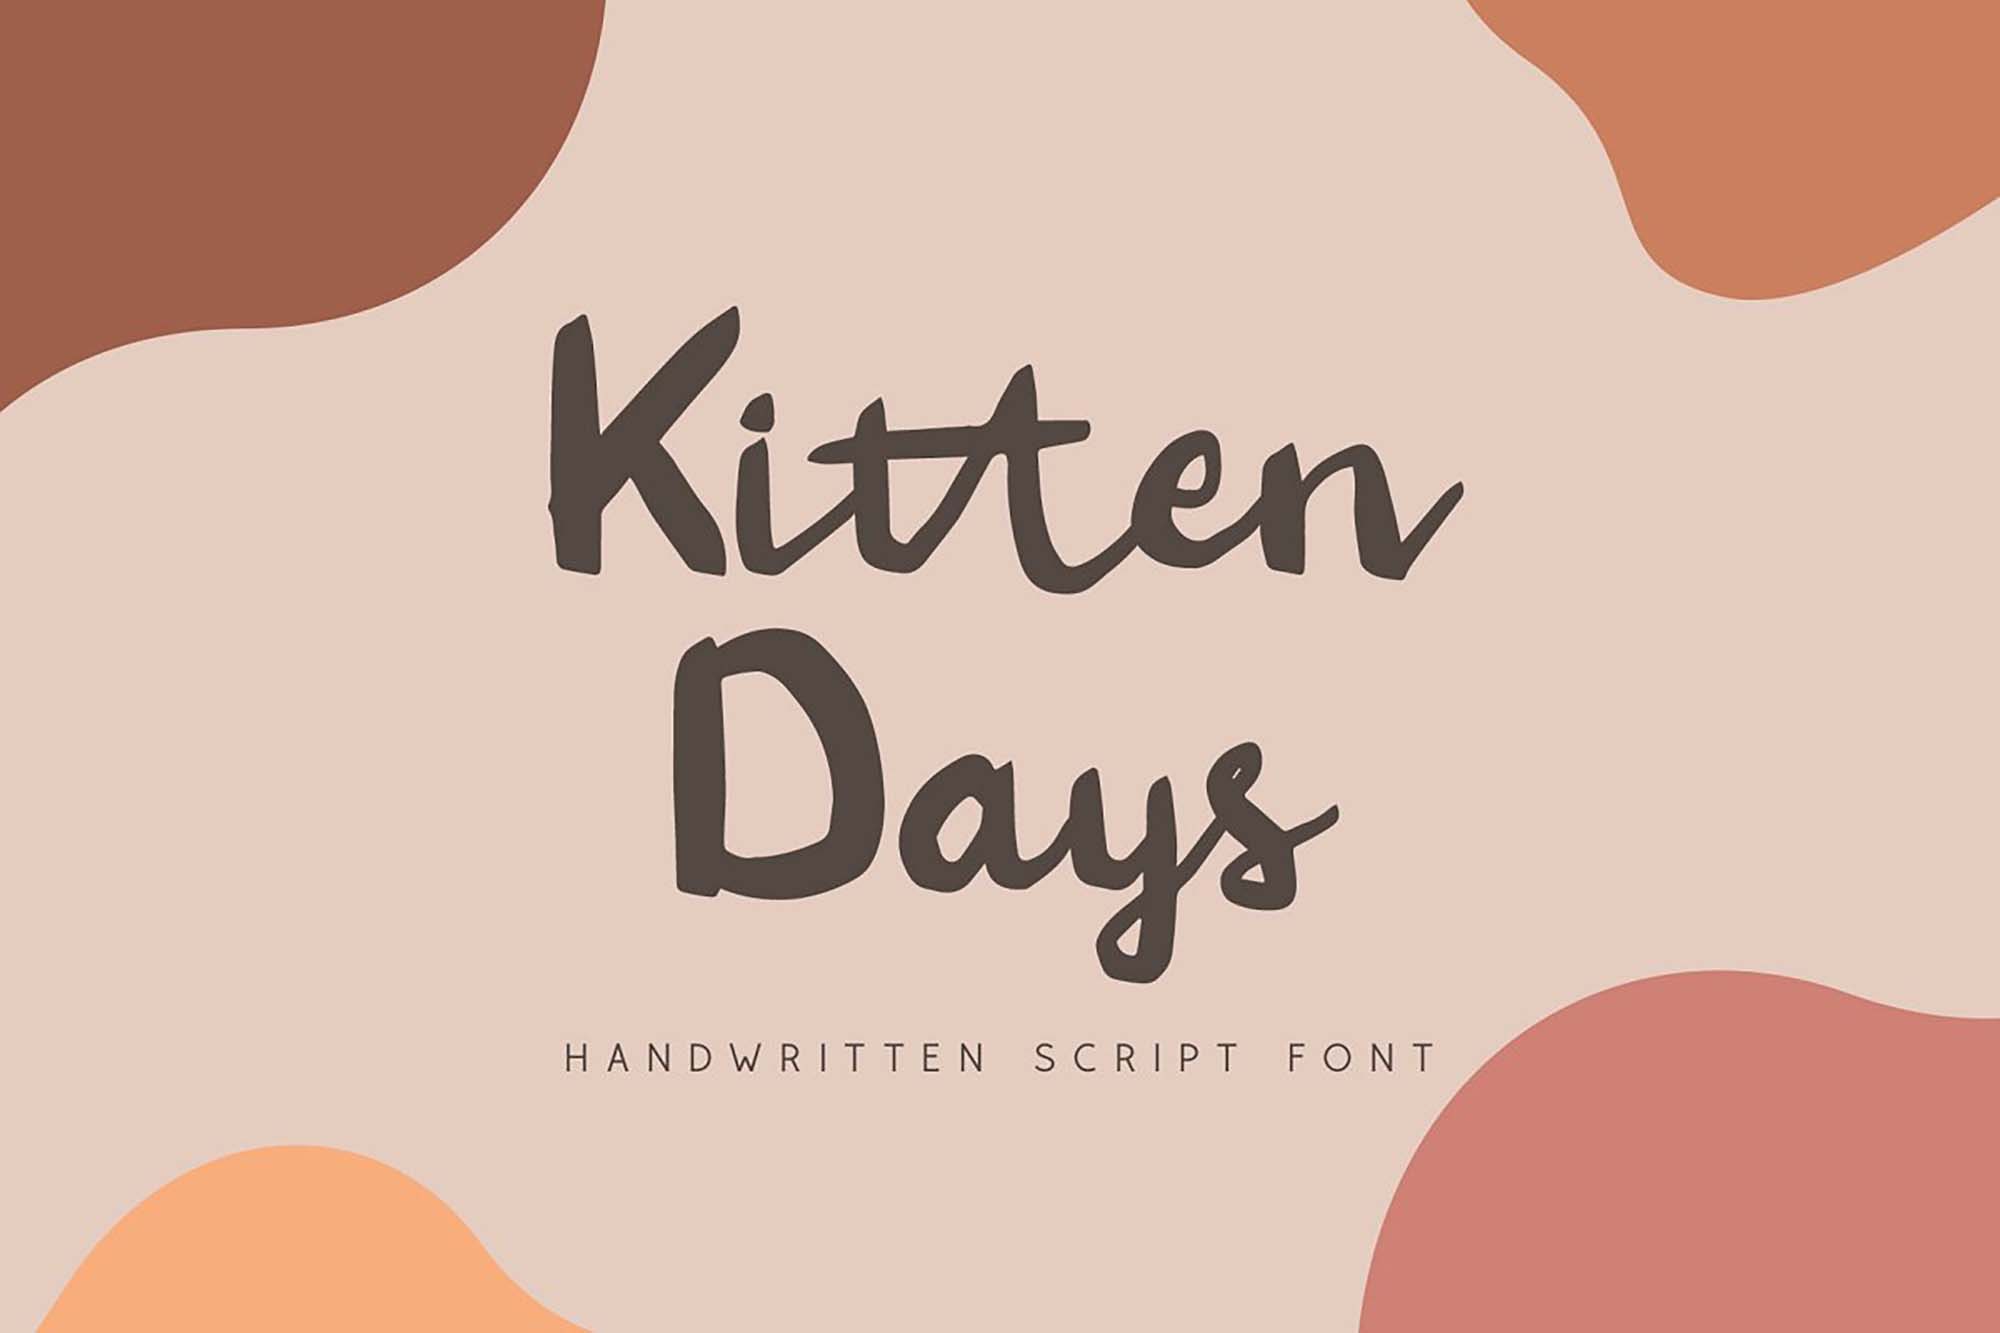 Kitten Days Handwritten Font